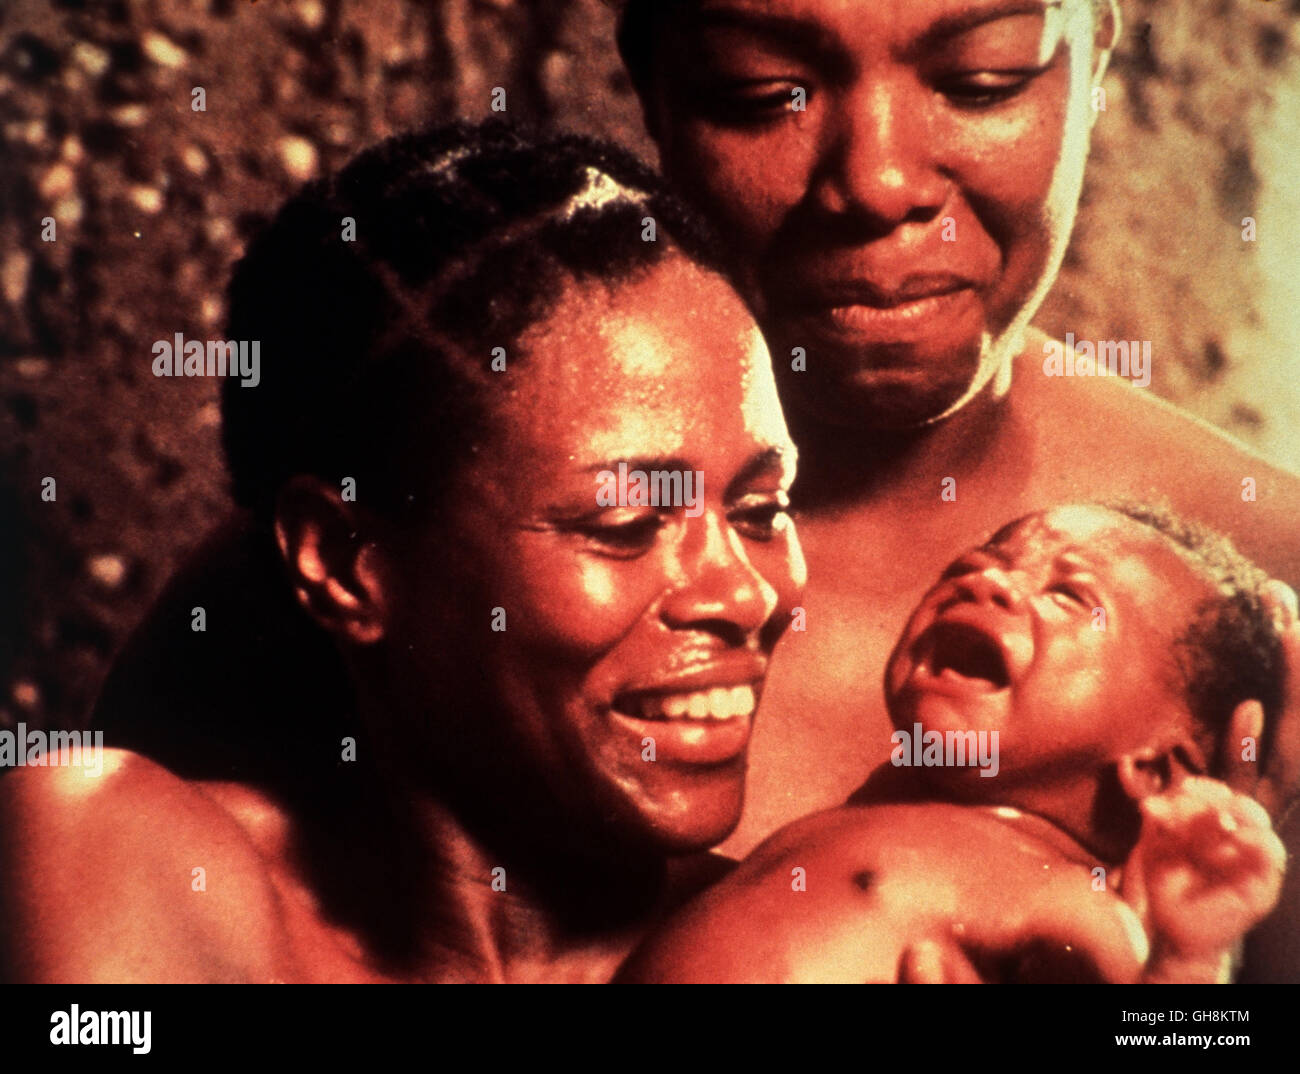 Radici / Eine afrikanische Kindheit USA 1977 / David Greene Szene: Binta (CICELY TYSON) und Omoro (THALMUS RASULATA) mit dem neugeborenen Kunta. Regie: David Greene aka. Eine afrikanische Kindheit Foto Stock